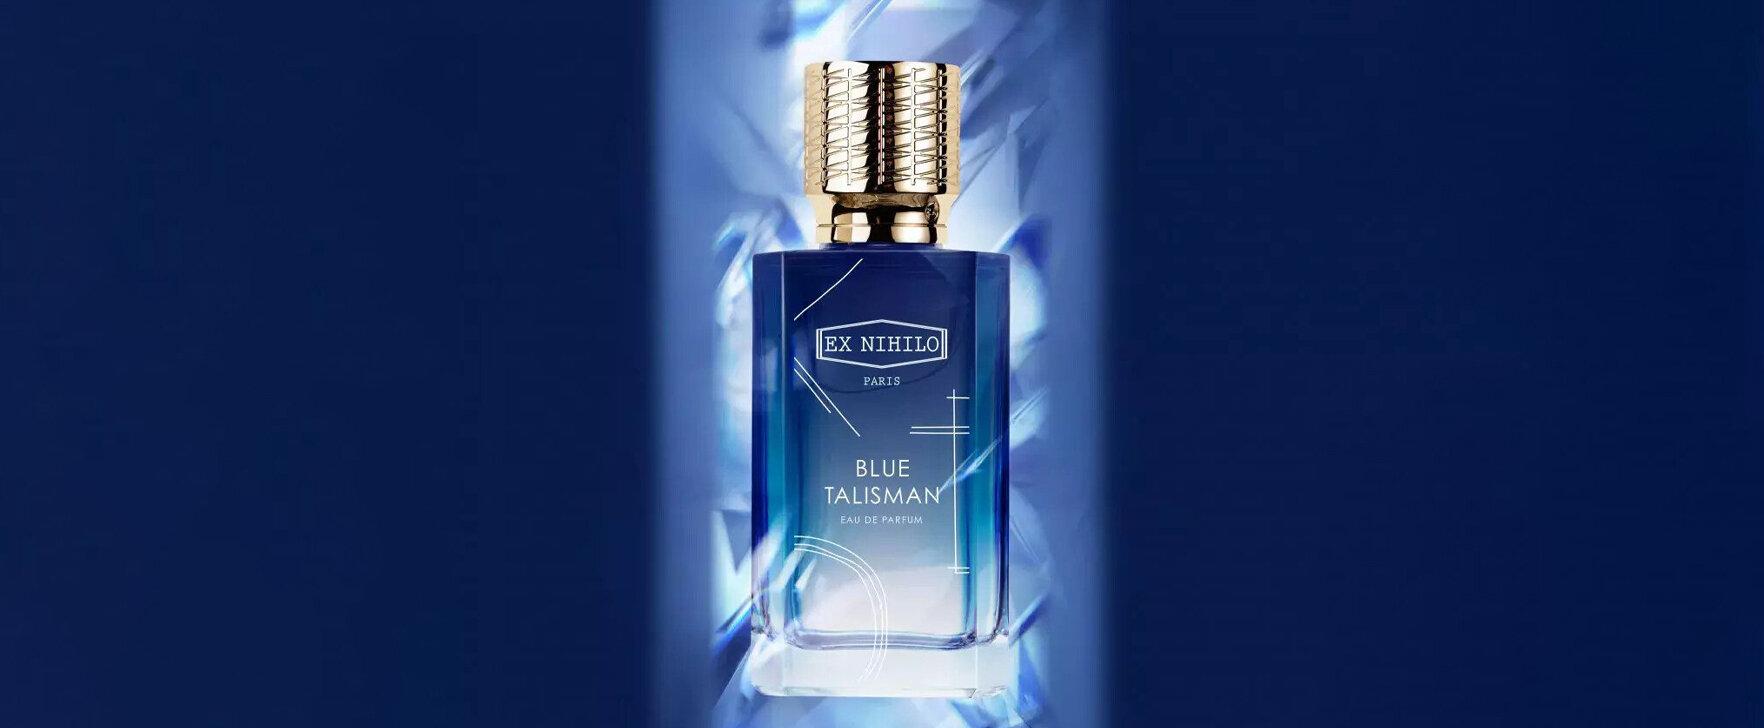 Blue Talisman: A Limited Edition Eau de Parfum To Celebrate Ex Nihilo's Anniversary